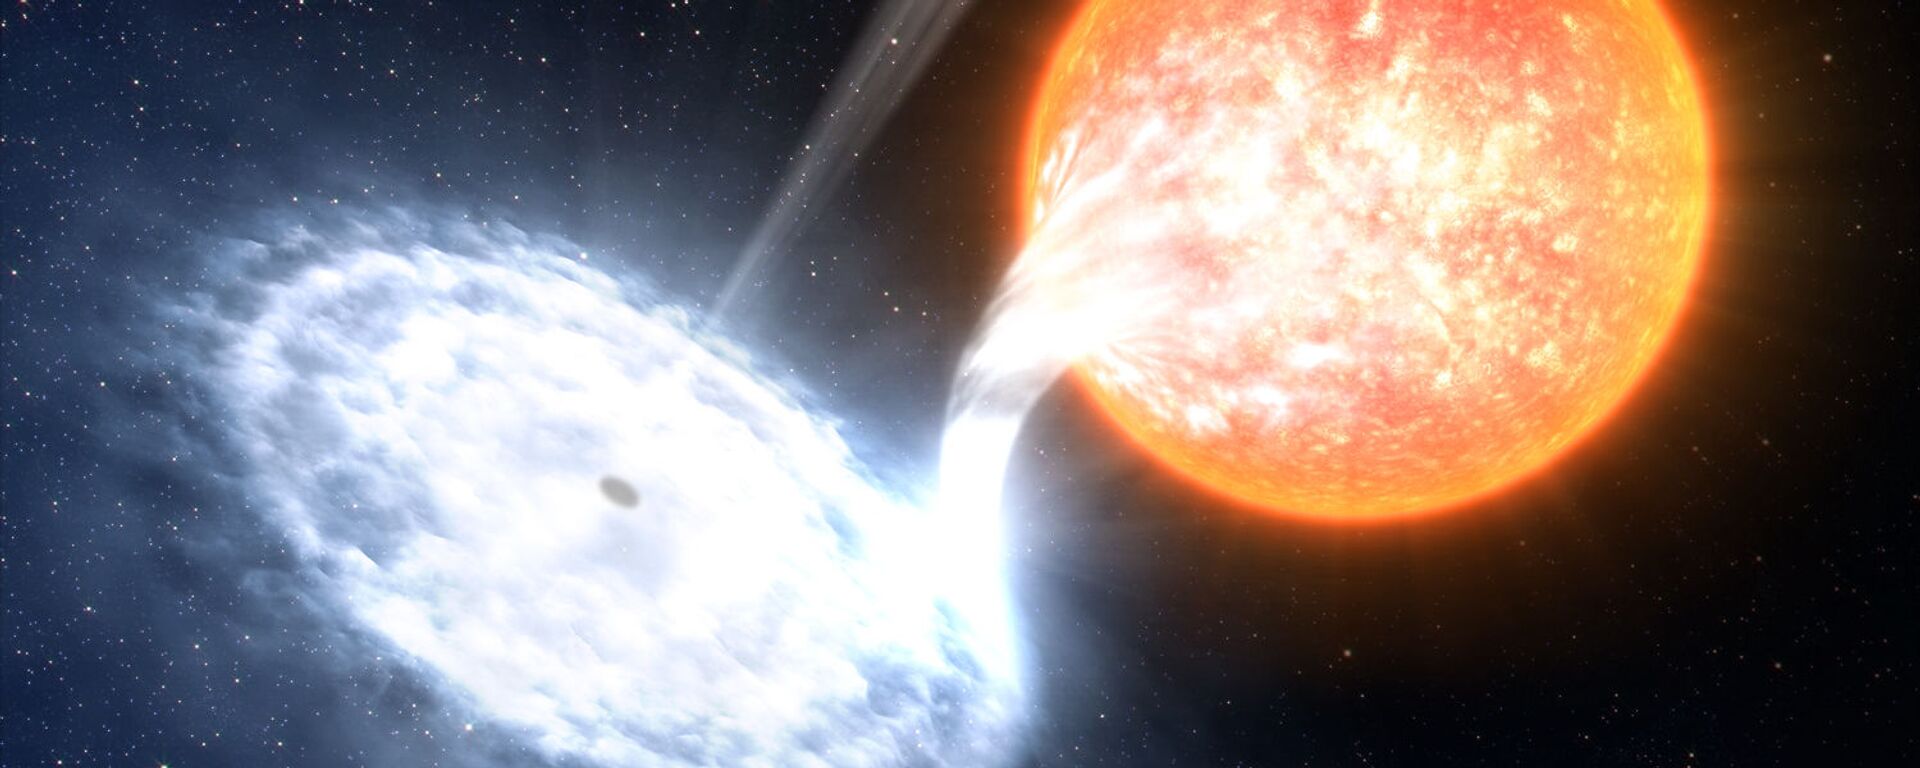 المجرة GX 339-4 - إحدى الثنائيات الأكثر ديناميكية في الفضاء، مع أربعة انفجارات خلال  الأعوام السبعة الماضية. في المجموعة الشمسية، نجم متطور لا يكبر الشمس كثيراً، يدور حول ثقب أسود يقدر حجمه بـ 10 أضعاف من الكتل الشمسية.  - سبوتنيك عربي, 1920, 09.04.2022